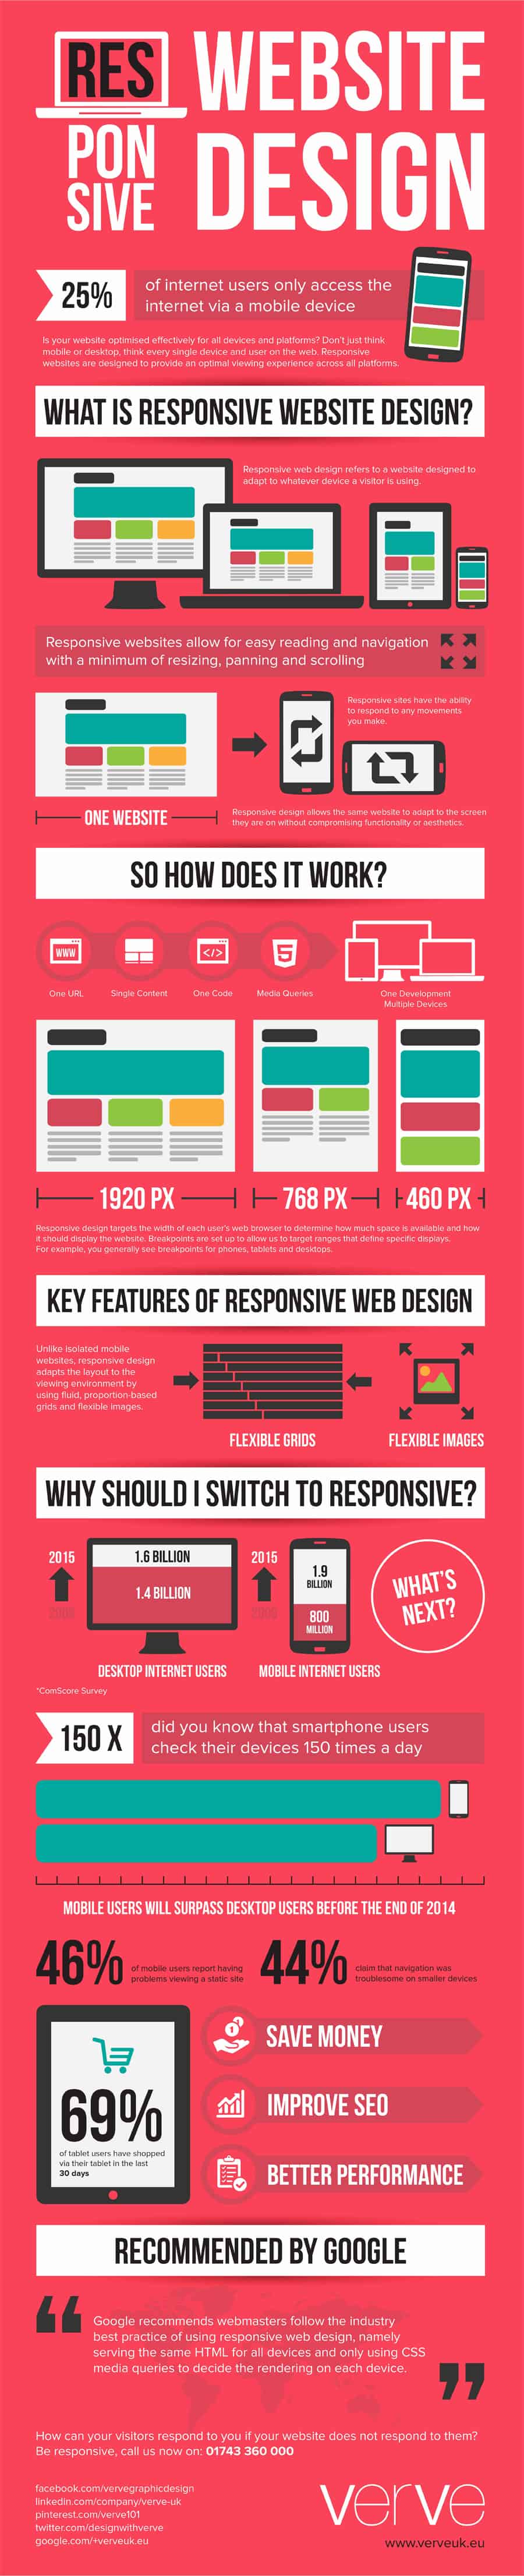 What is responsive website design